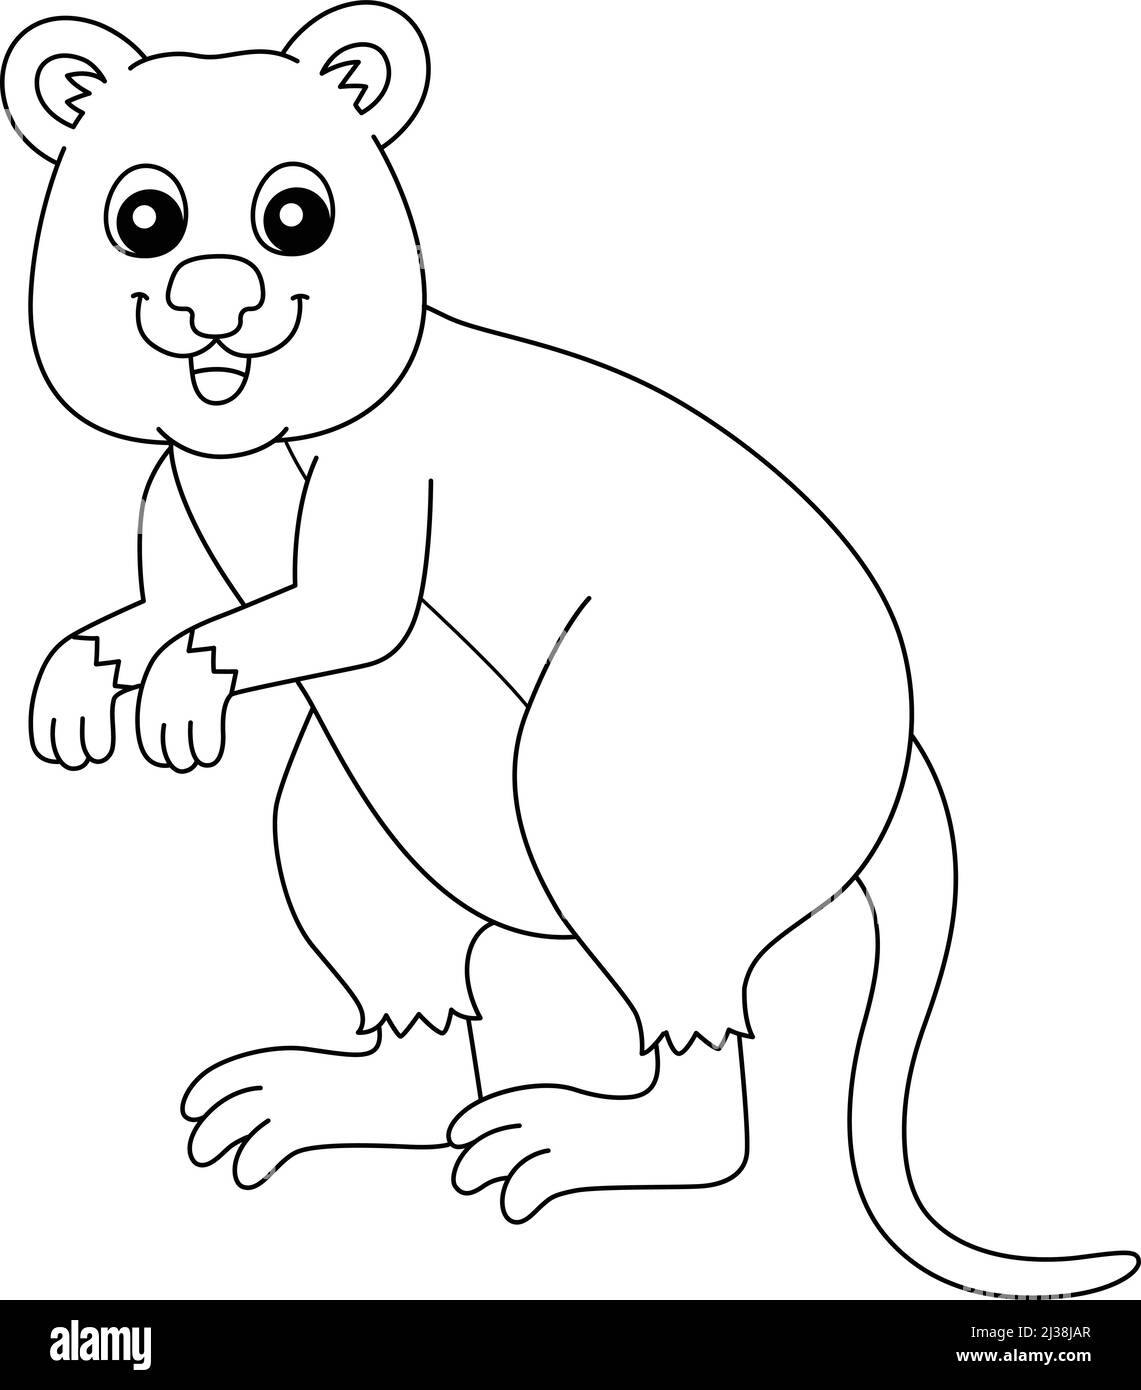 Quokka Animal Coloring Page isolato per i bambini Illustrazione Vettoriale